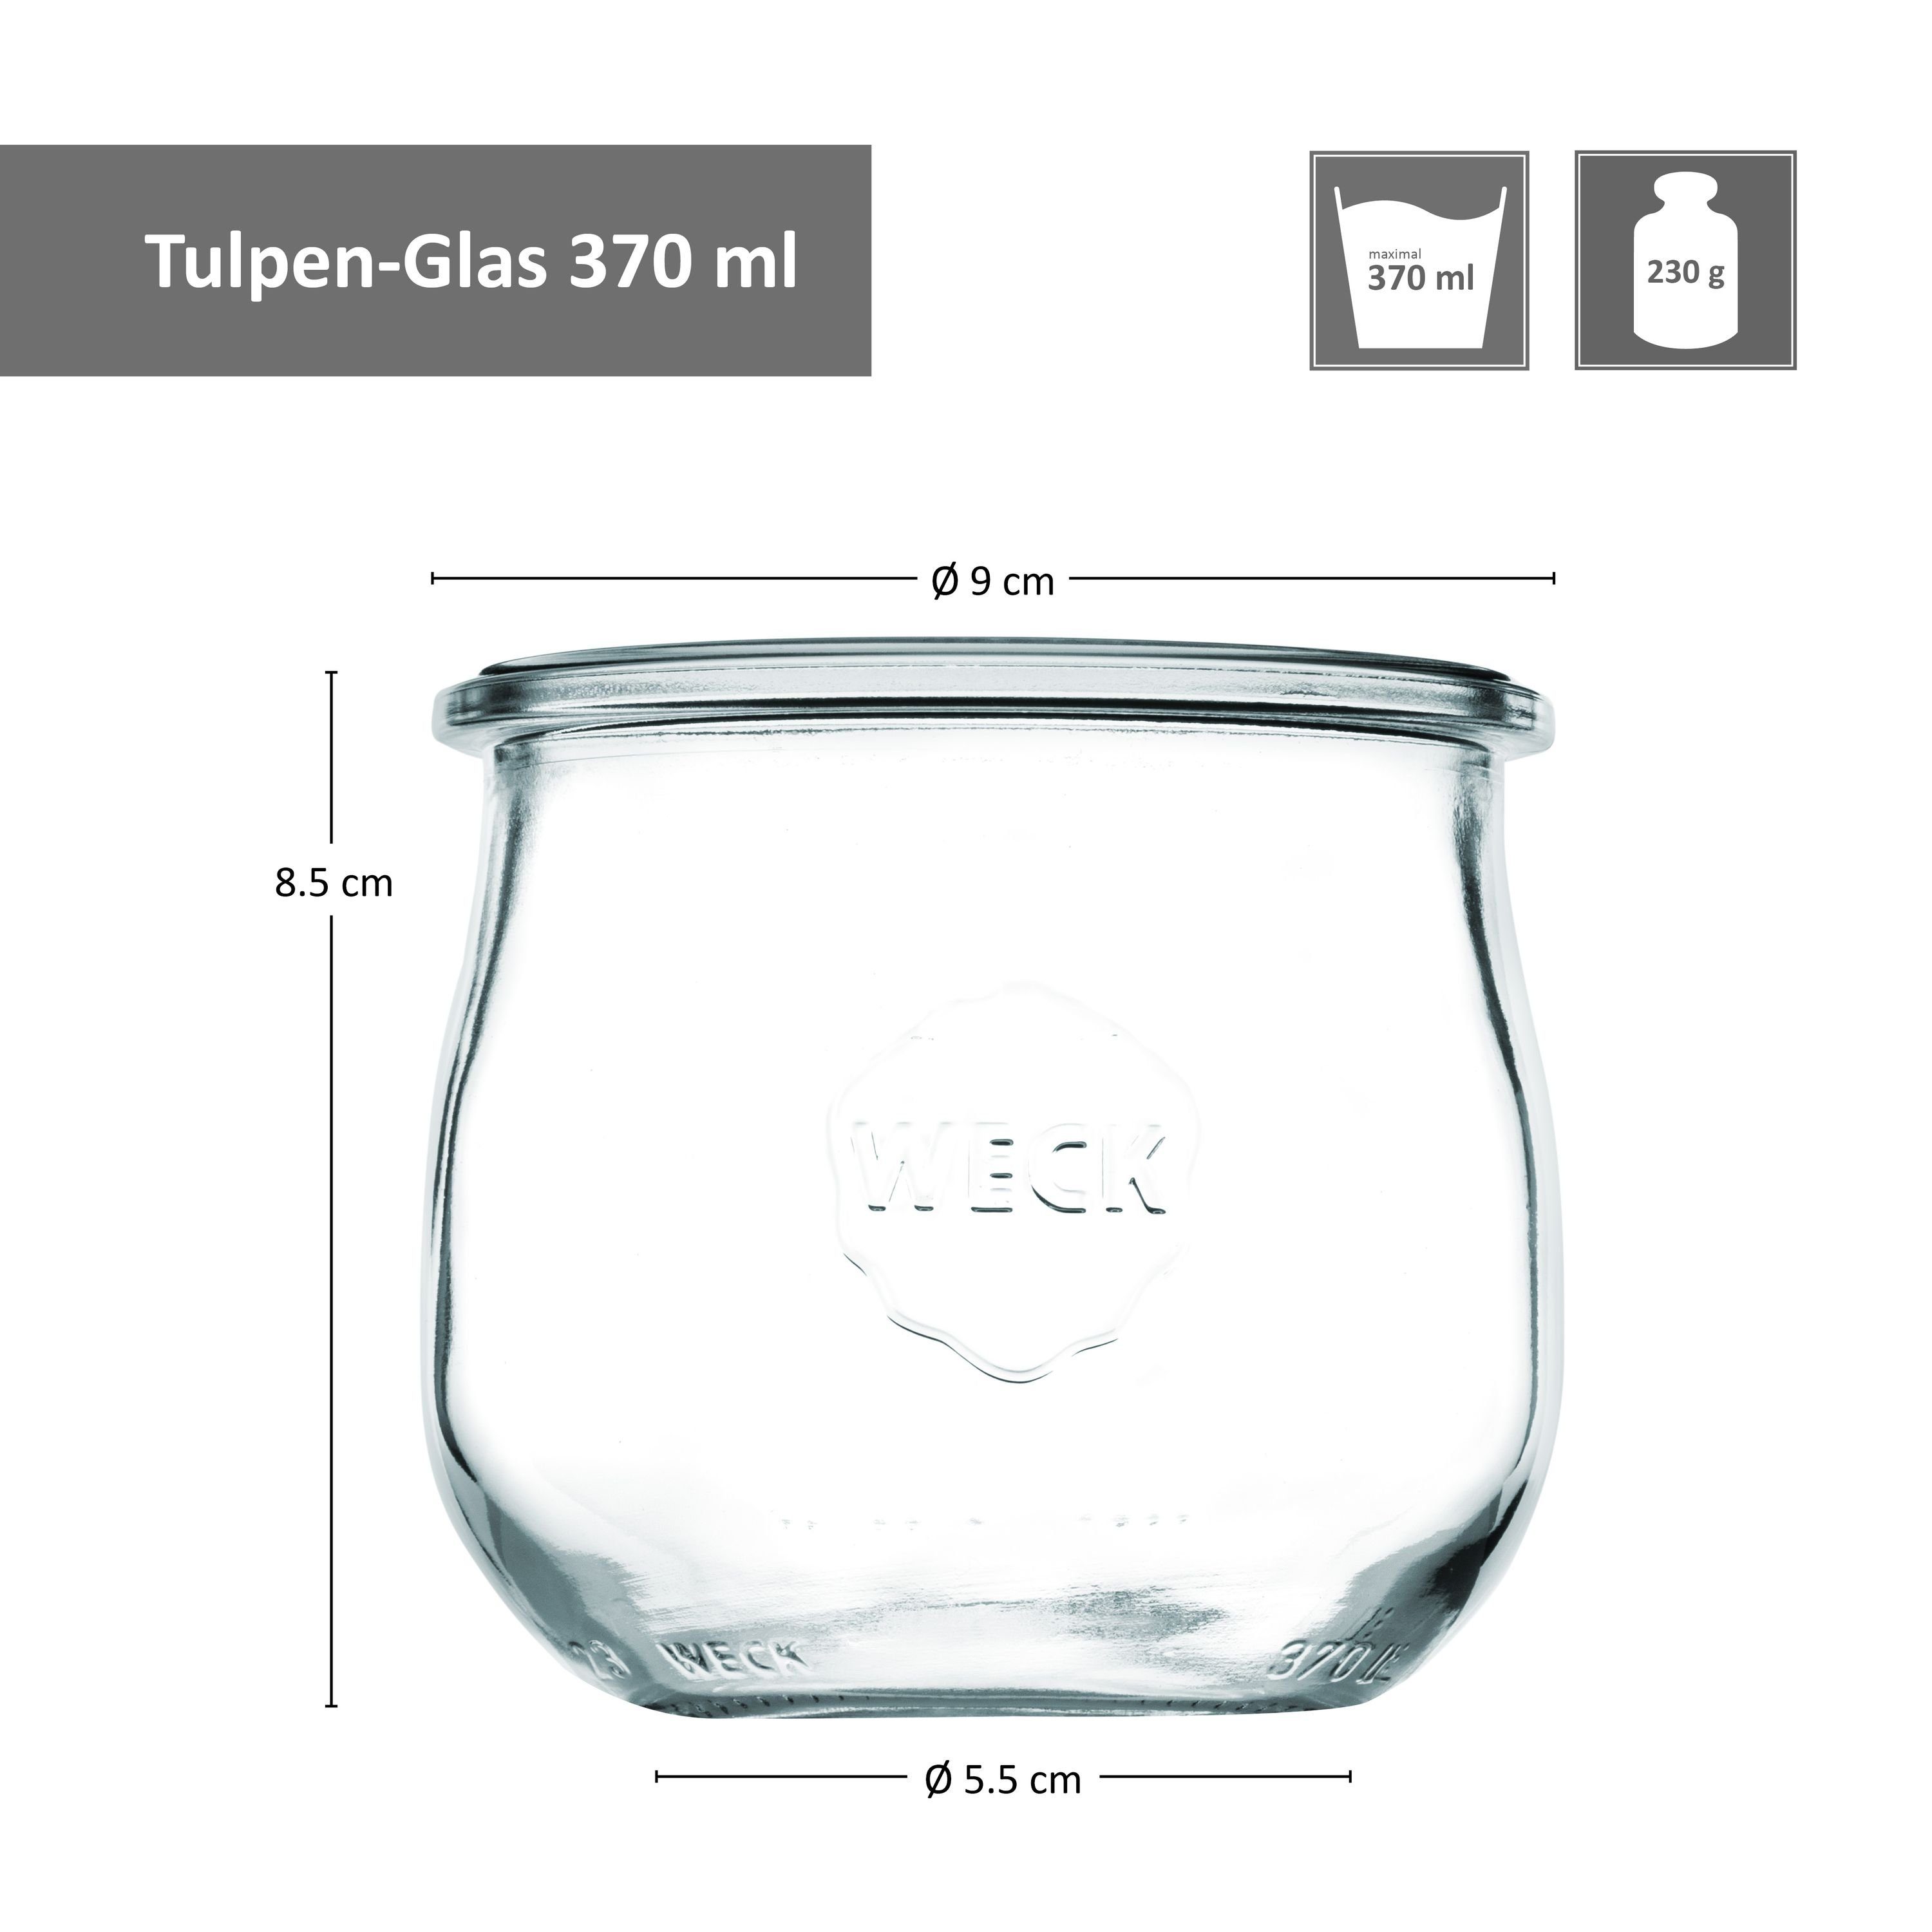 24er Einkochringe Gläser 370ml Set Einmachglas MamboCat Glas Glasdeckel Klammer, Tulpenglas Weck